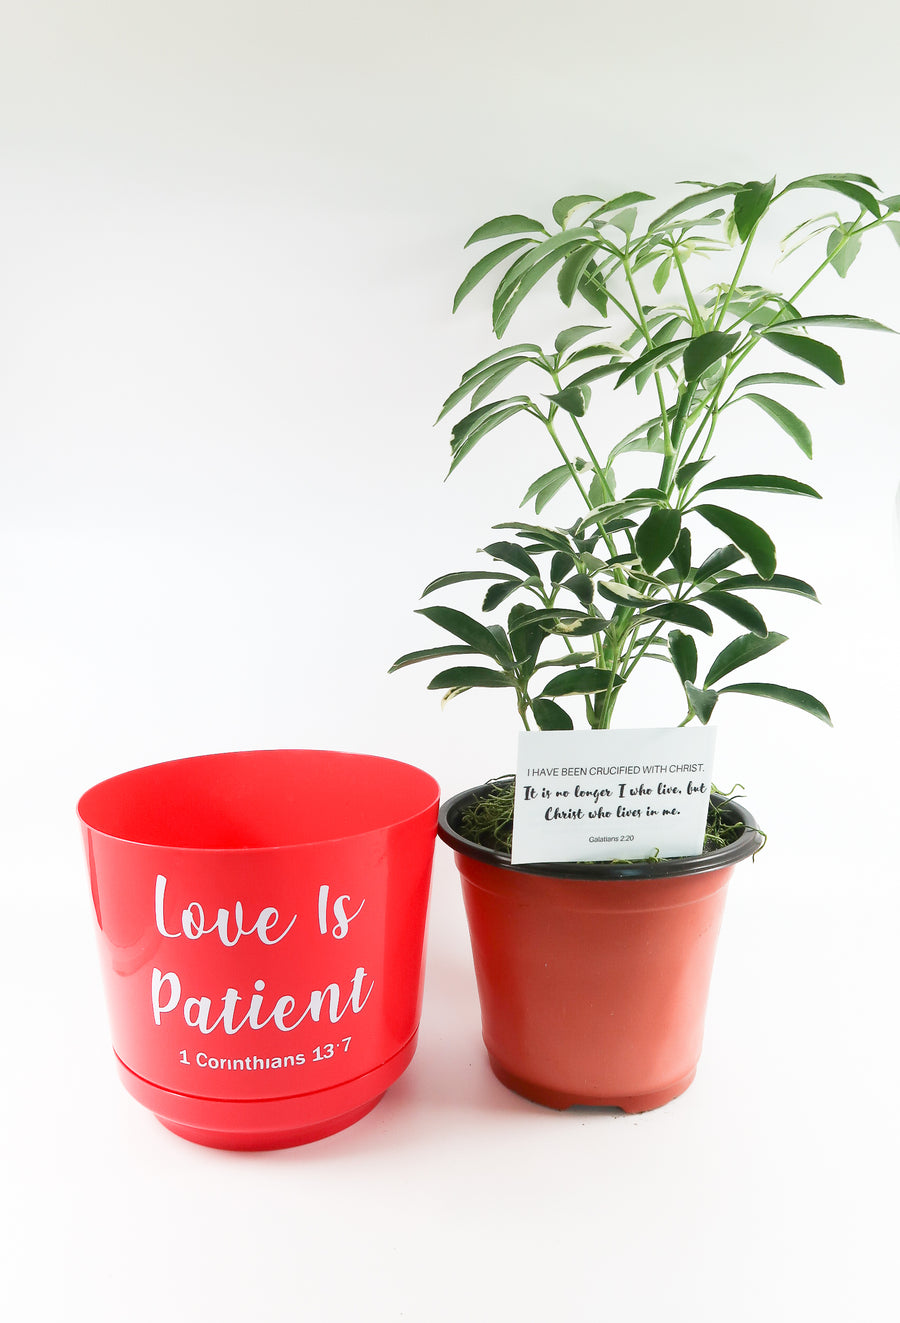 Umbrella Schefflera Plant In "Love Is Patient" Nursery Pot